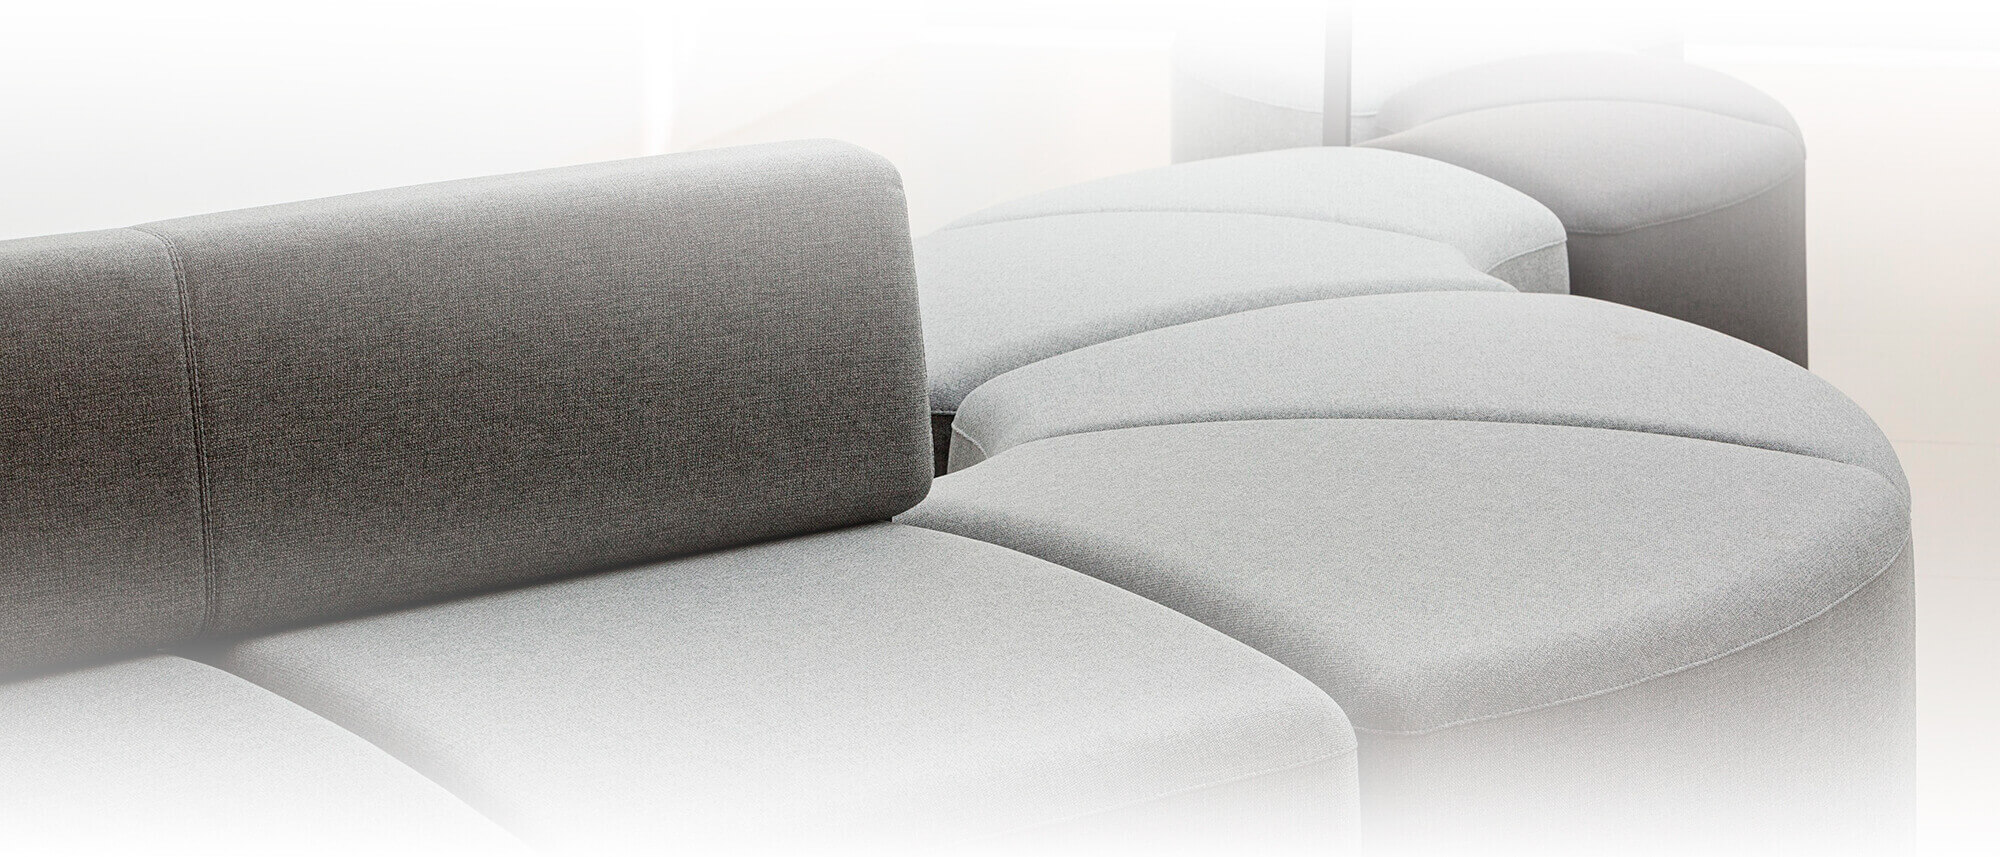 Asientos y sofás de diseño para crear espacios de descanso cómodos y agradables